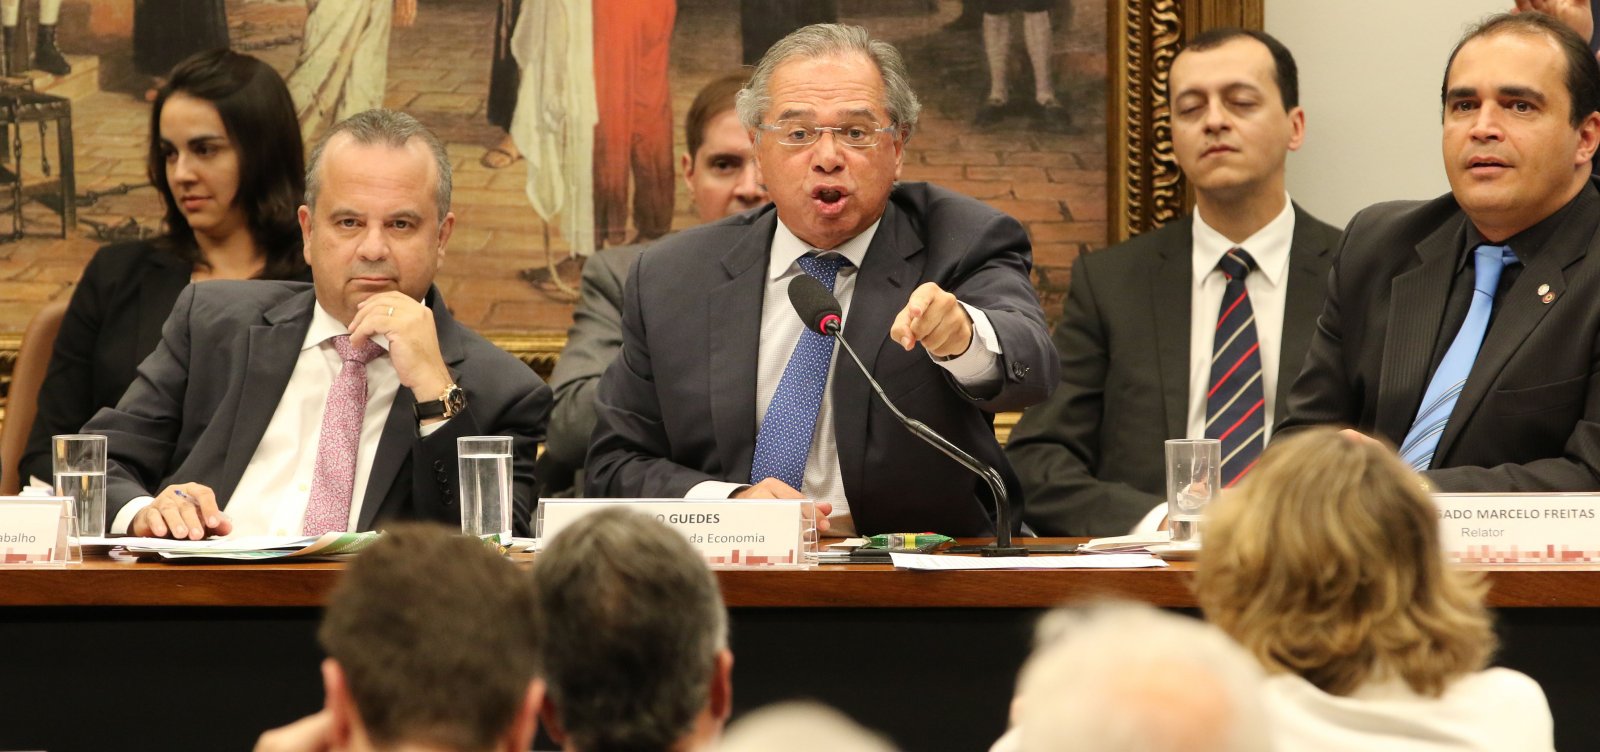 Guedes deixa sessão na CCJ após ser chamado de 'tchutchuca' por deputado; veja vídeo